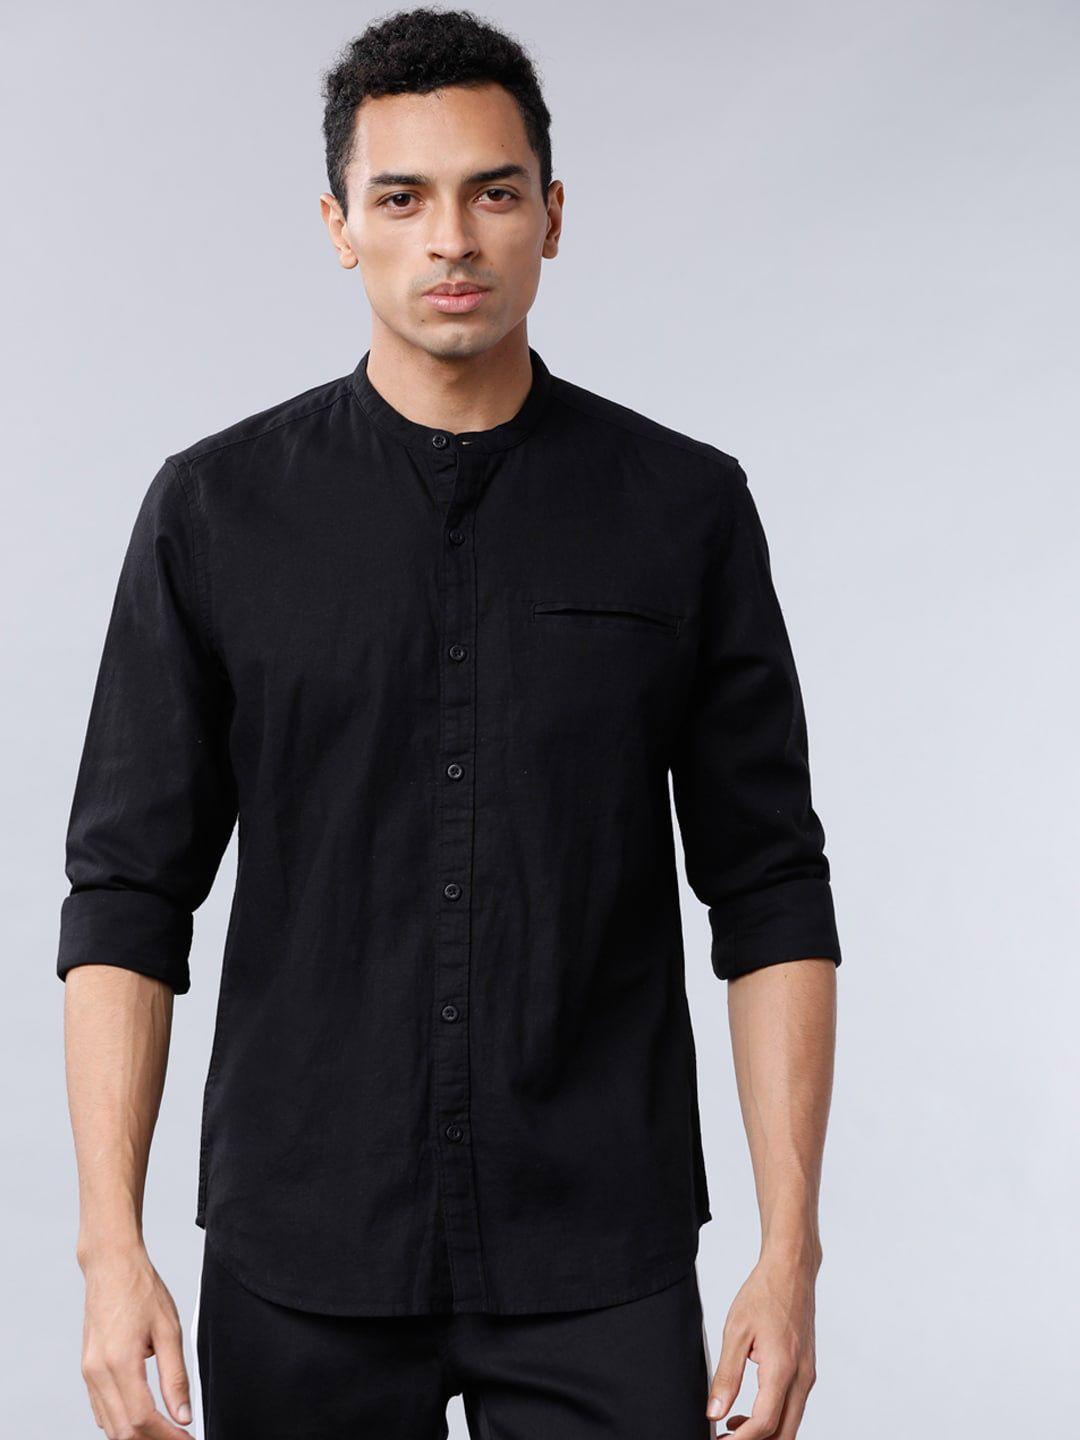 highlander-men-black-slim-fit-solid-casual-shirt